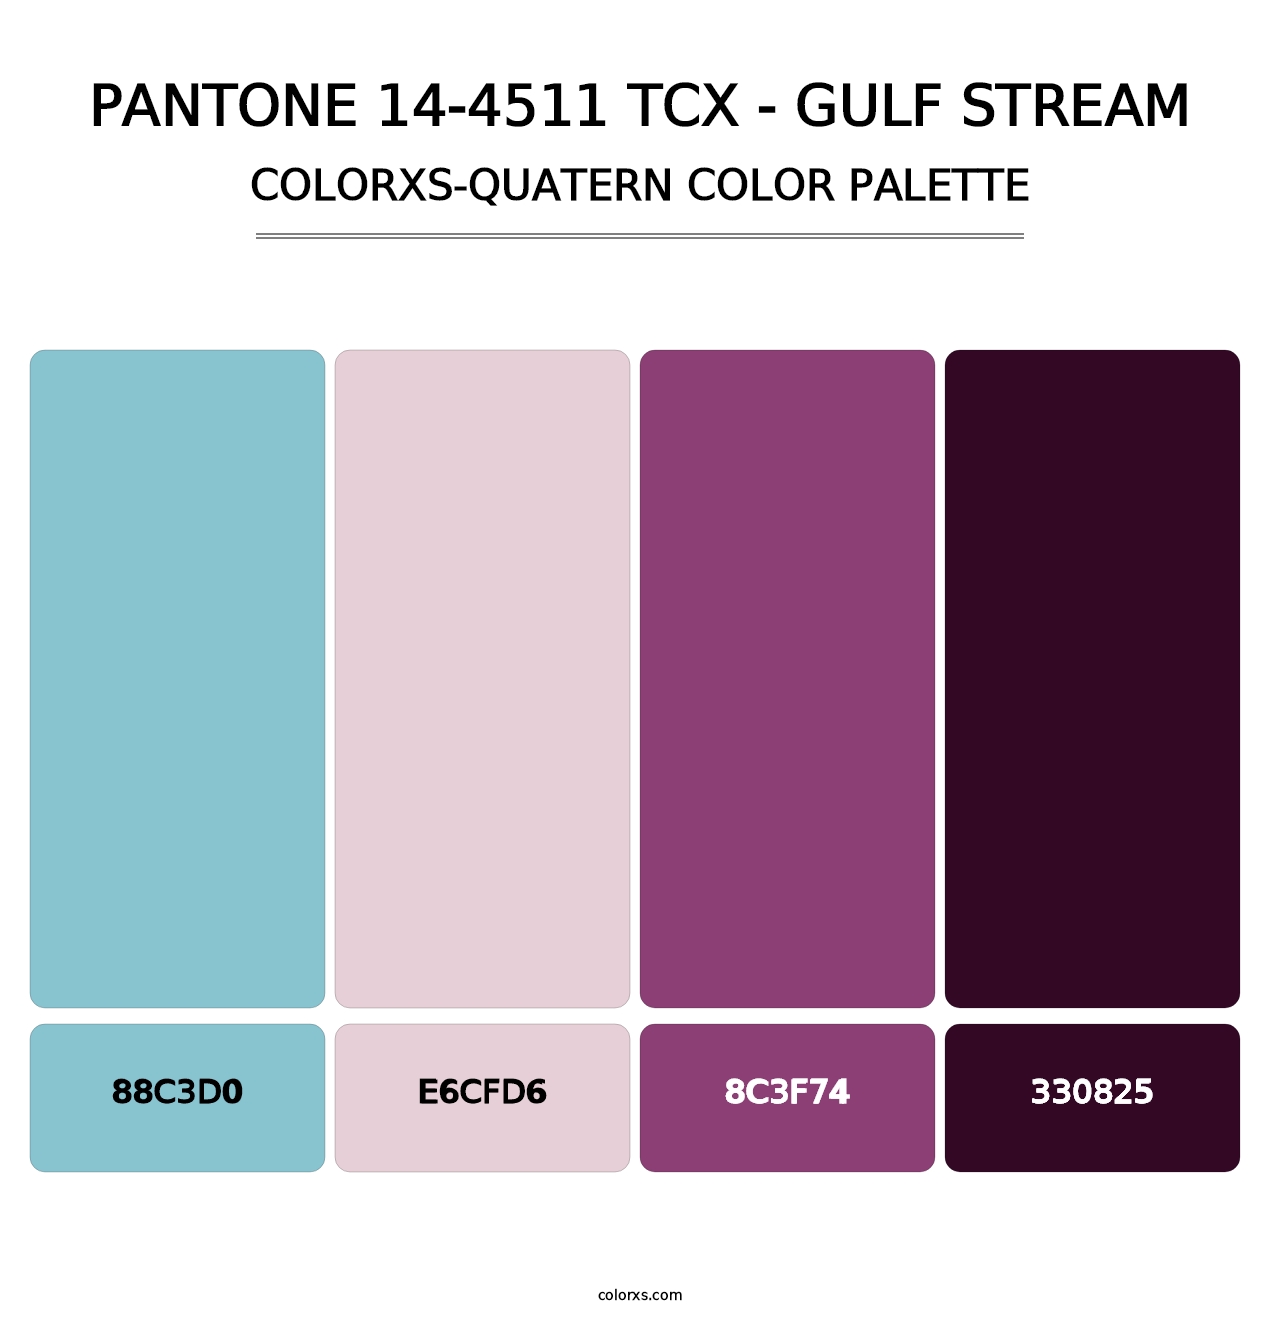 PANTONE 14-4511 TCX - Gulf Stream - Colorxs Quatern Palette